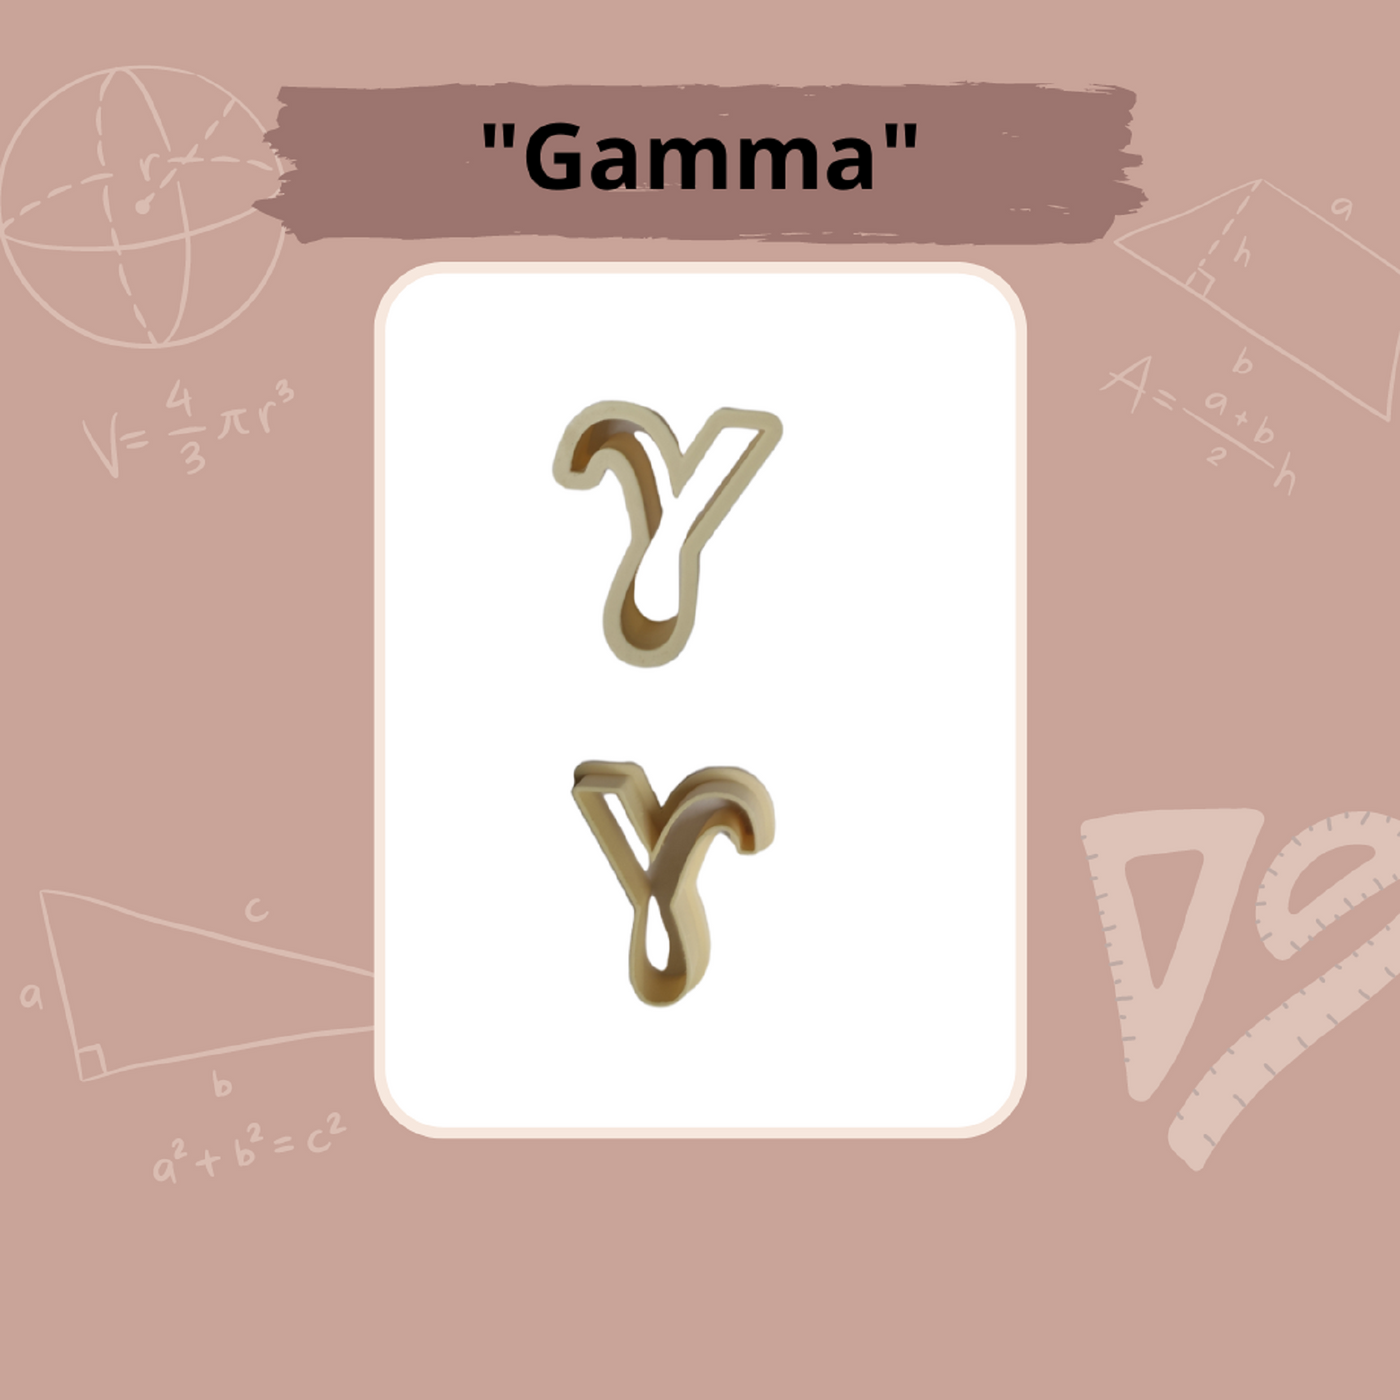 Keksausstecher "Gamma"